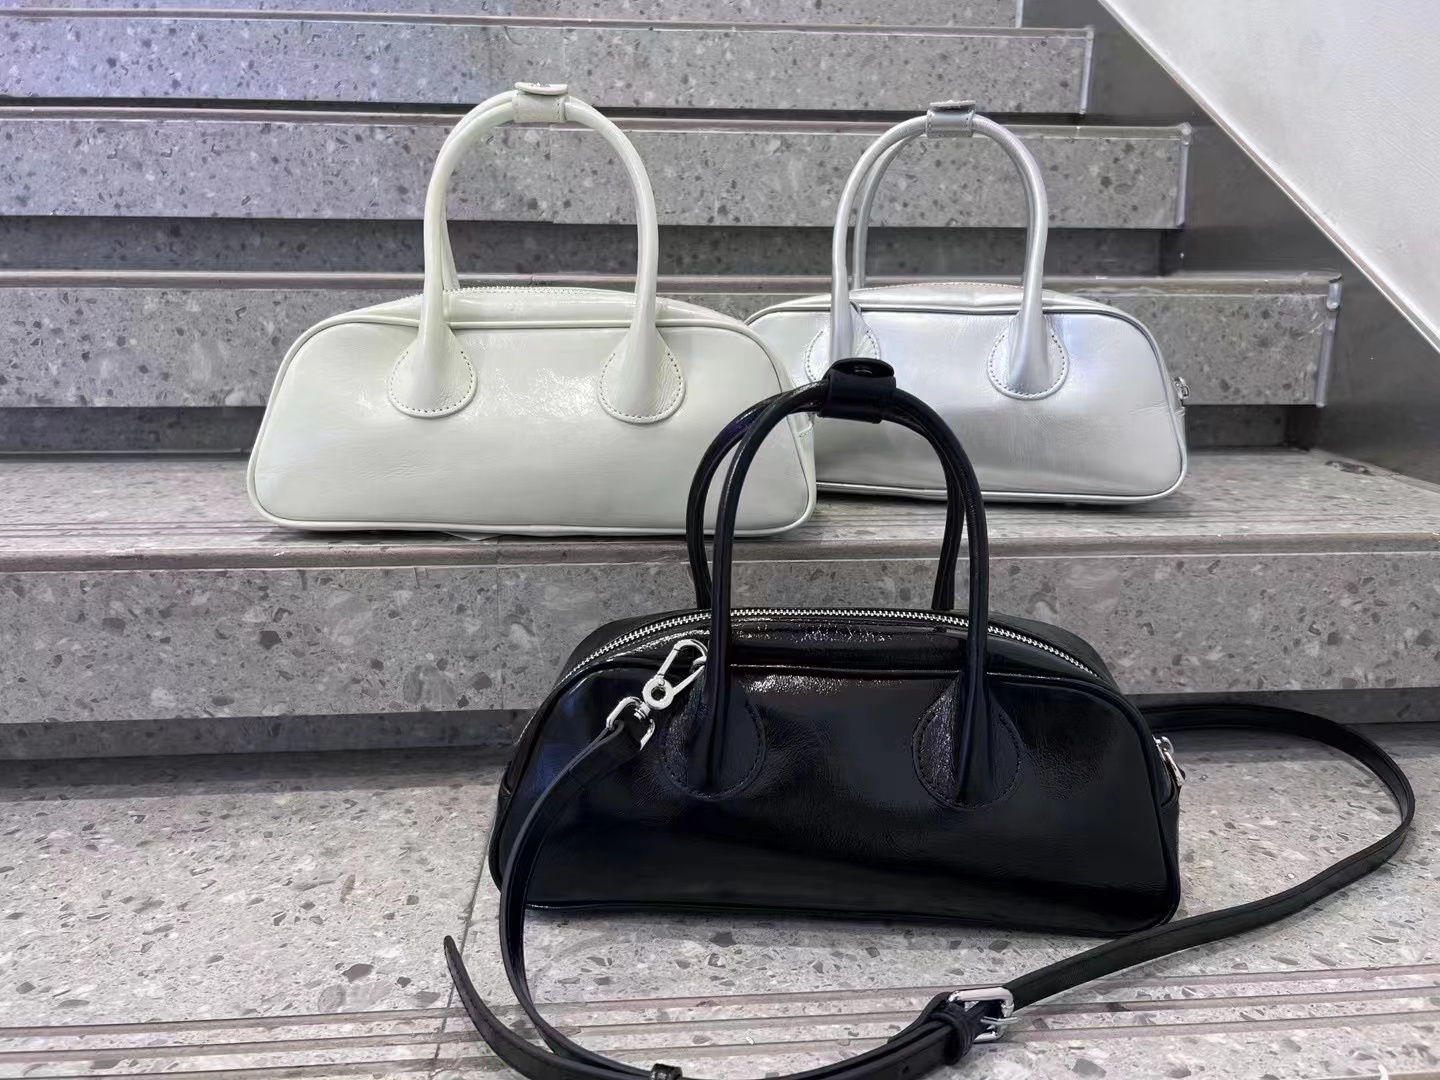 handbag for sale